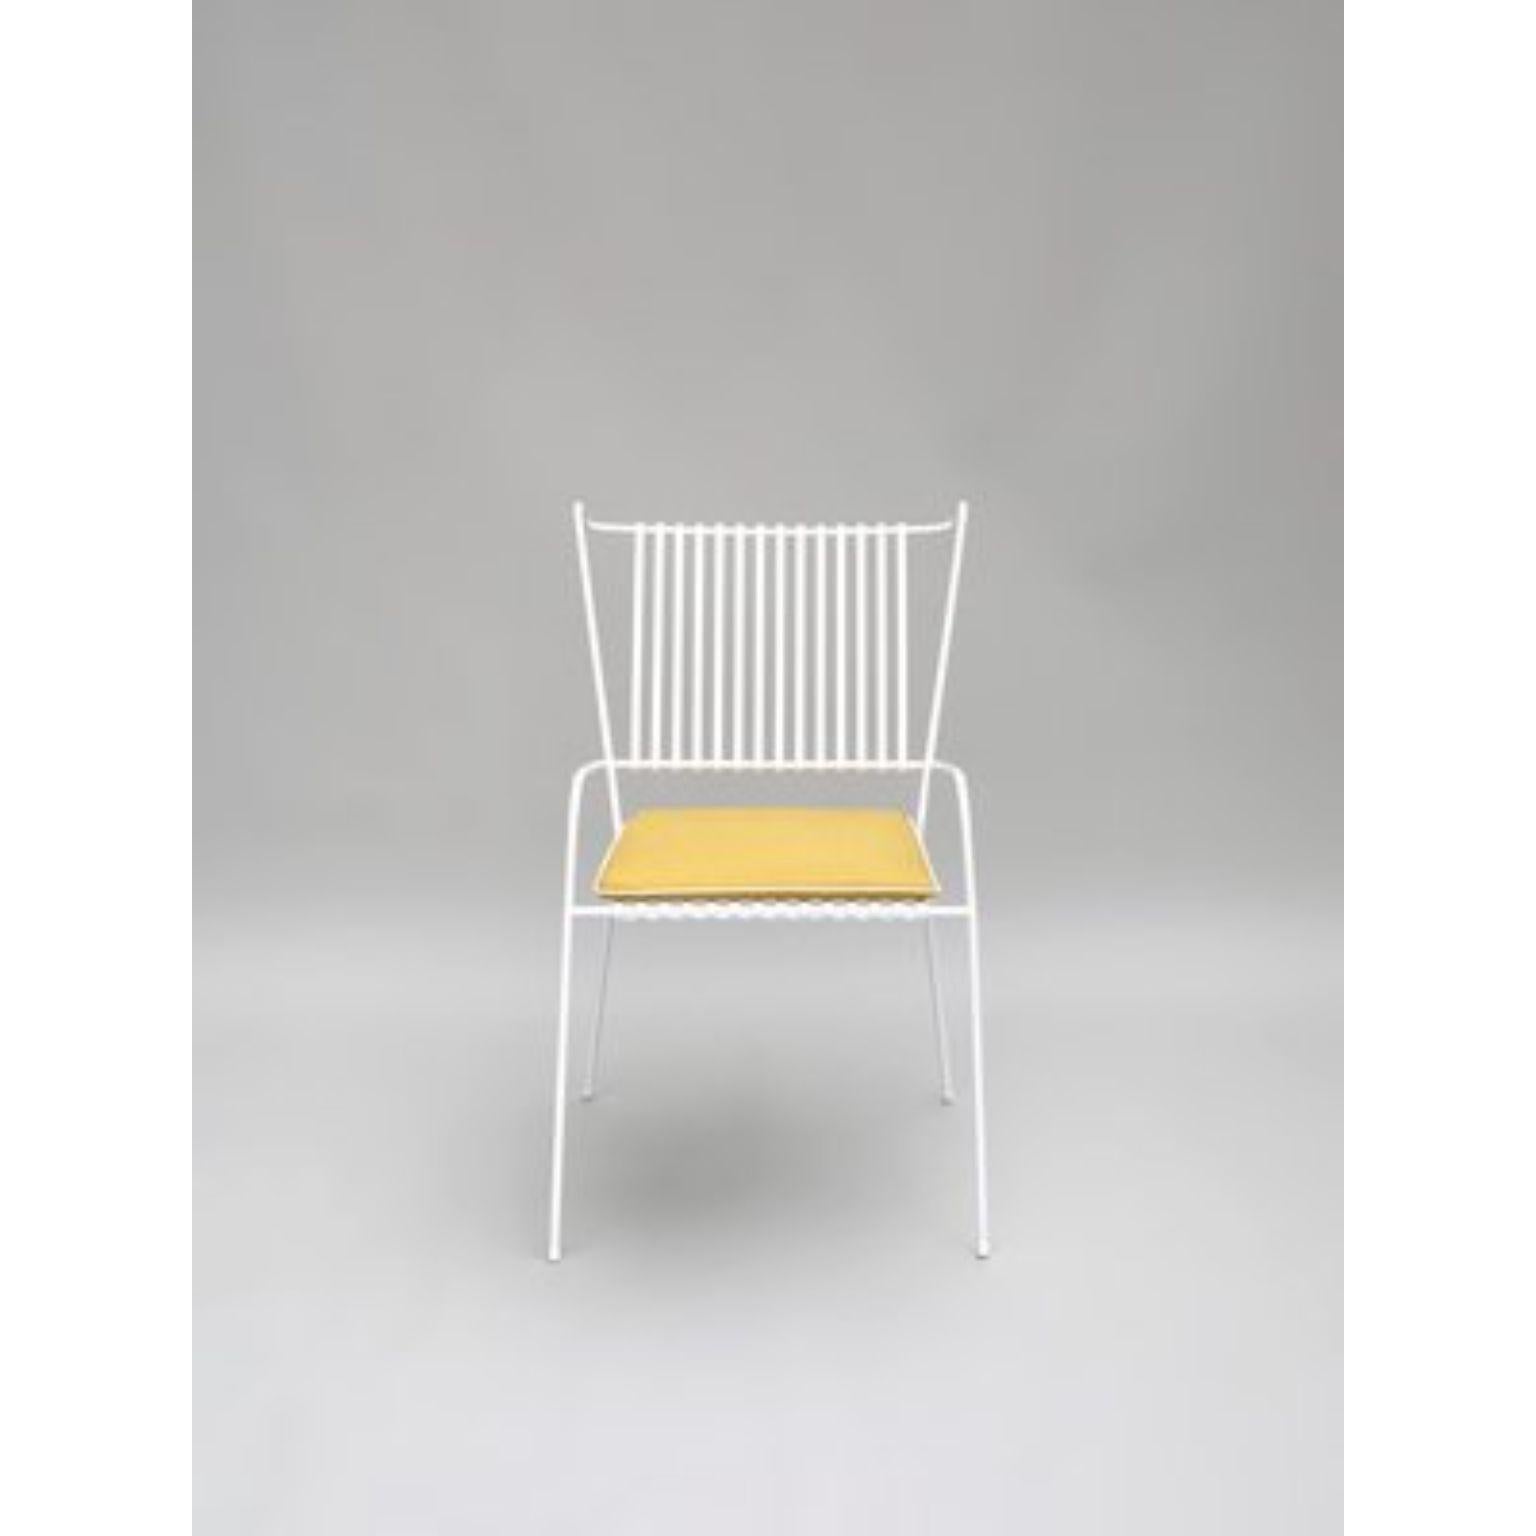 Chaise Capri blanche avec coussin d'assise de Collection S
Matériaux : Acier inoxydable revêtu par poudre, tissu adapté à une utilisation en extérieur.
Dimensions : Chaise : L 53 x P 60 x H 86 cm (hauteur d'assise 45 cm).
Coussin : L 42 x P 42 x